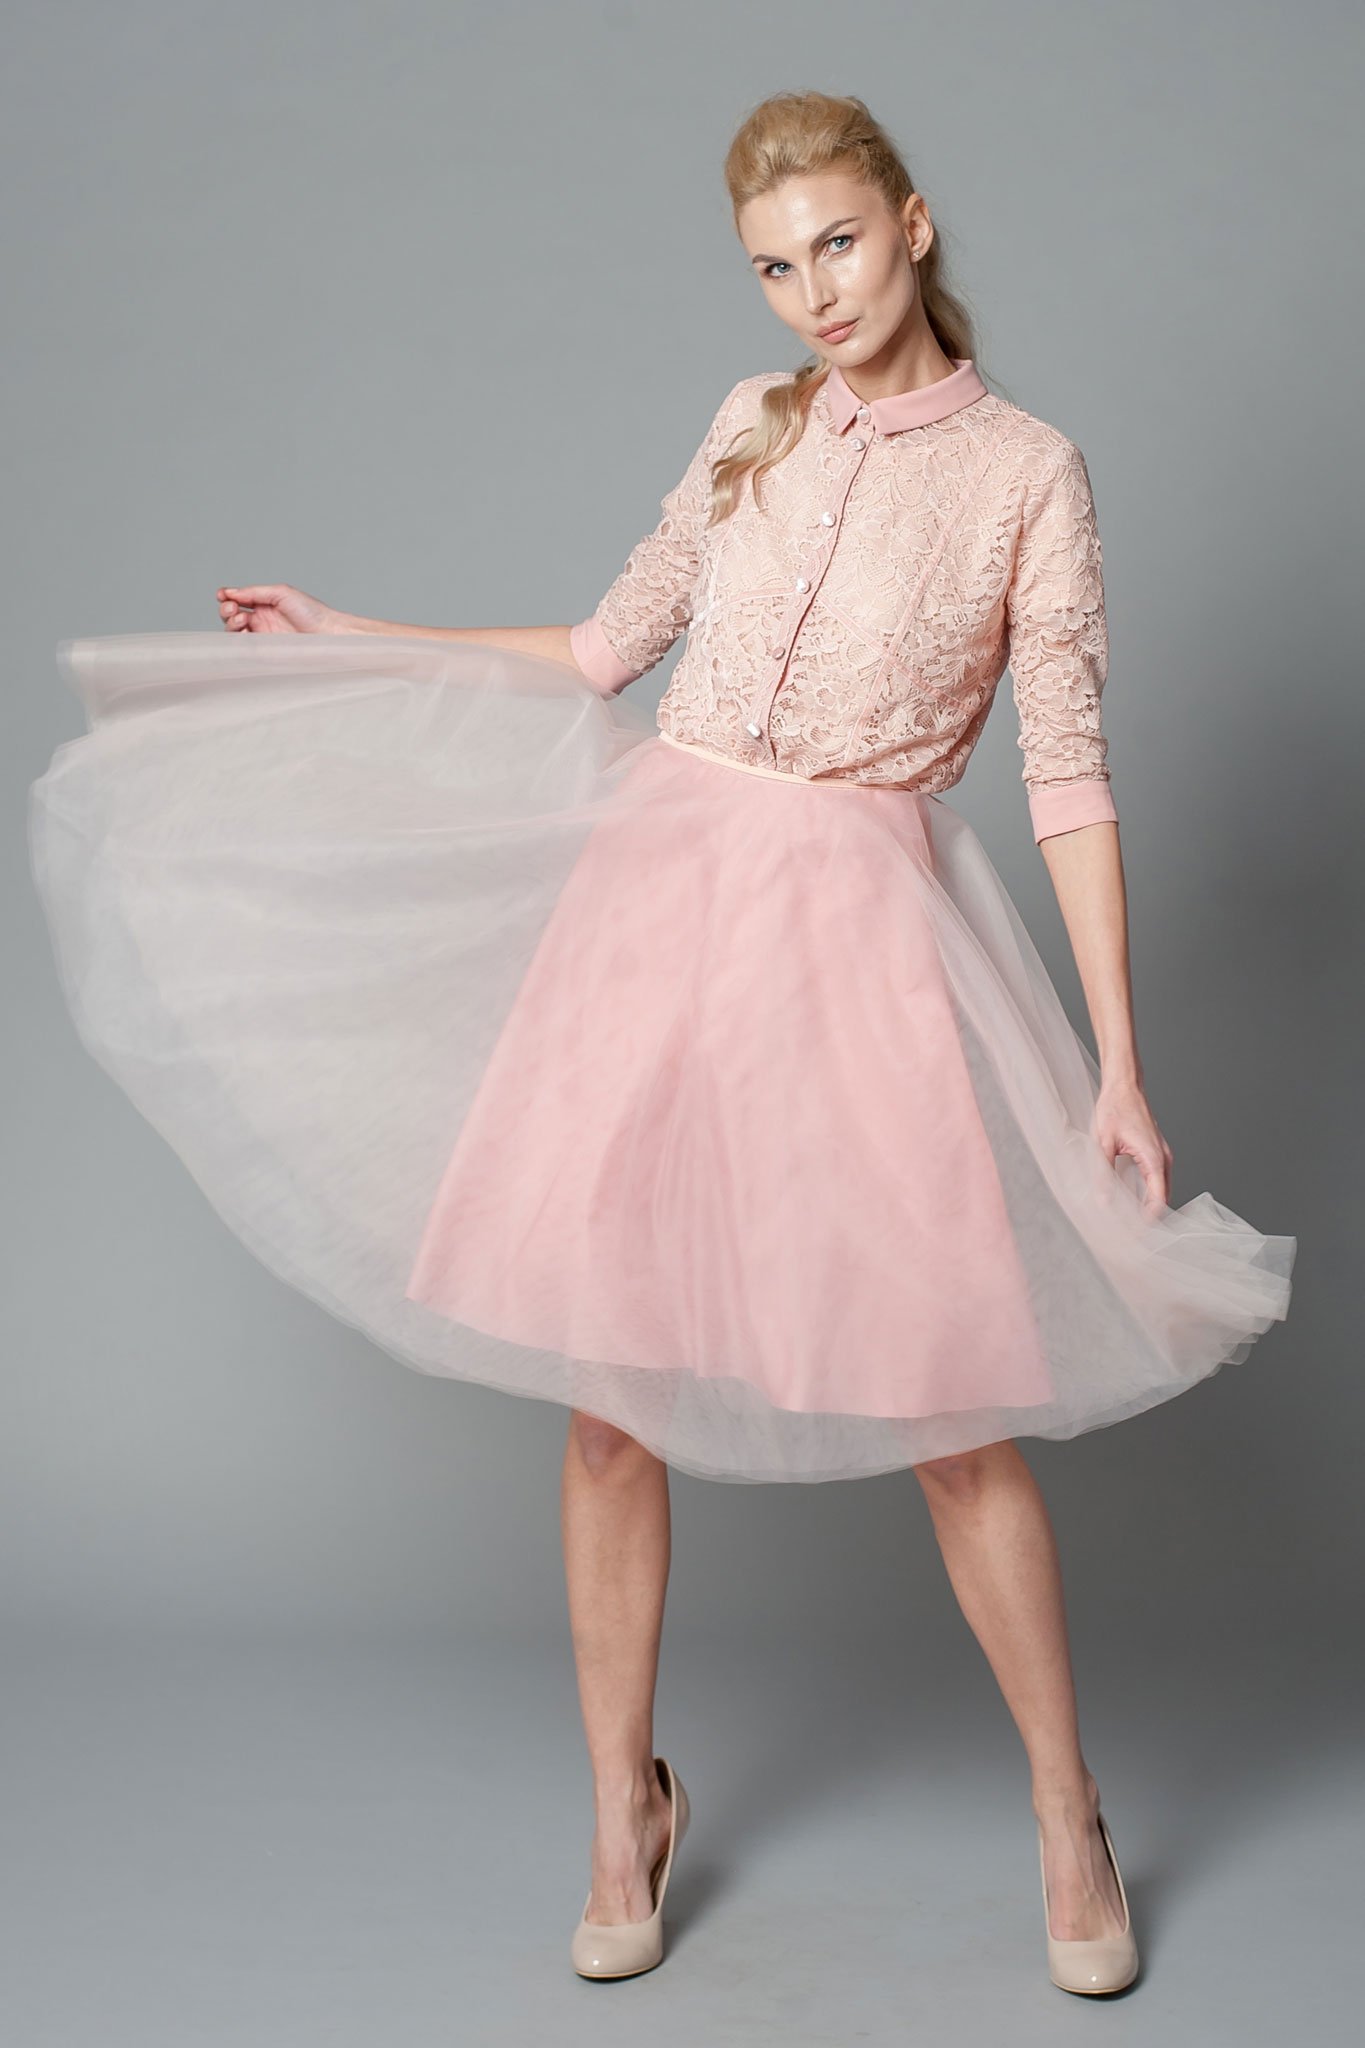 Blush Pink Shirt Midi Dress With Chiffon Collar, Cuffs And Tulle Skirt ...